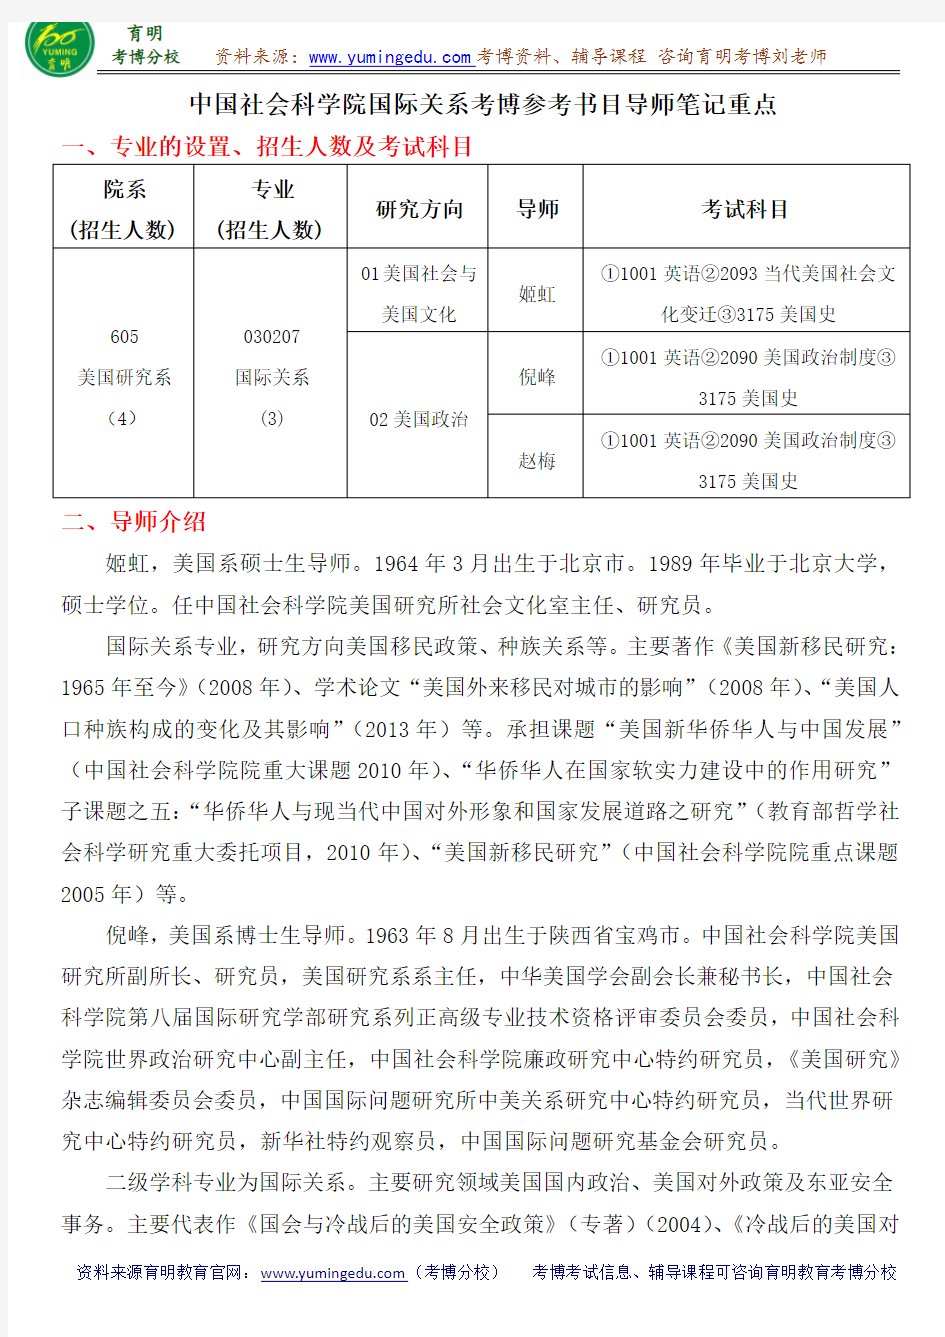 中国社会科学院国际关系考博参考书目导师笔记重点(2)